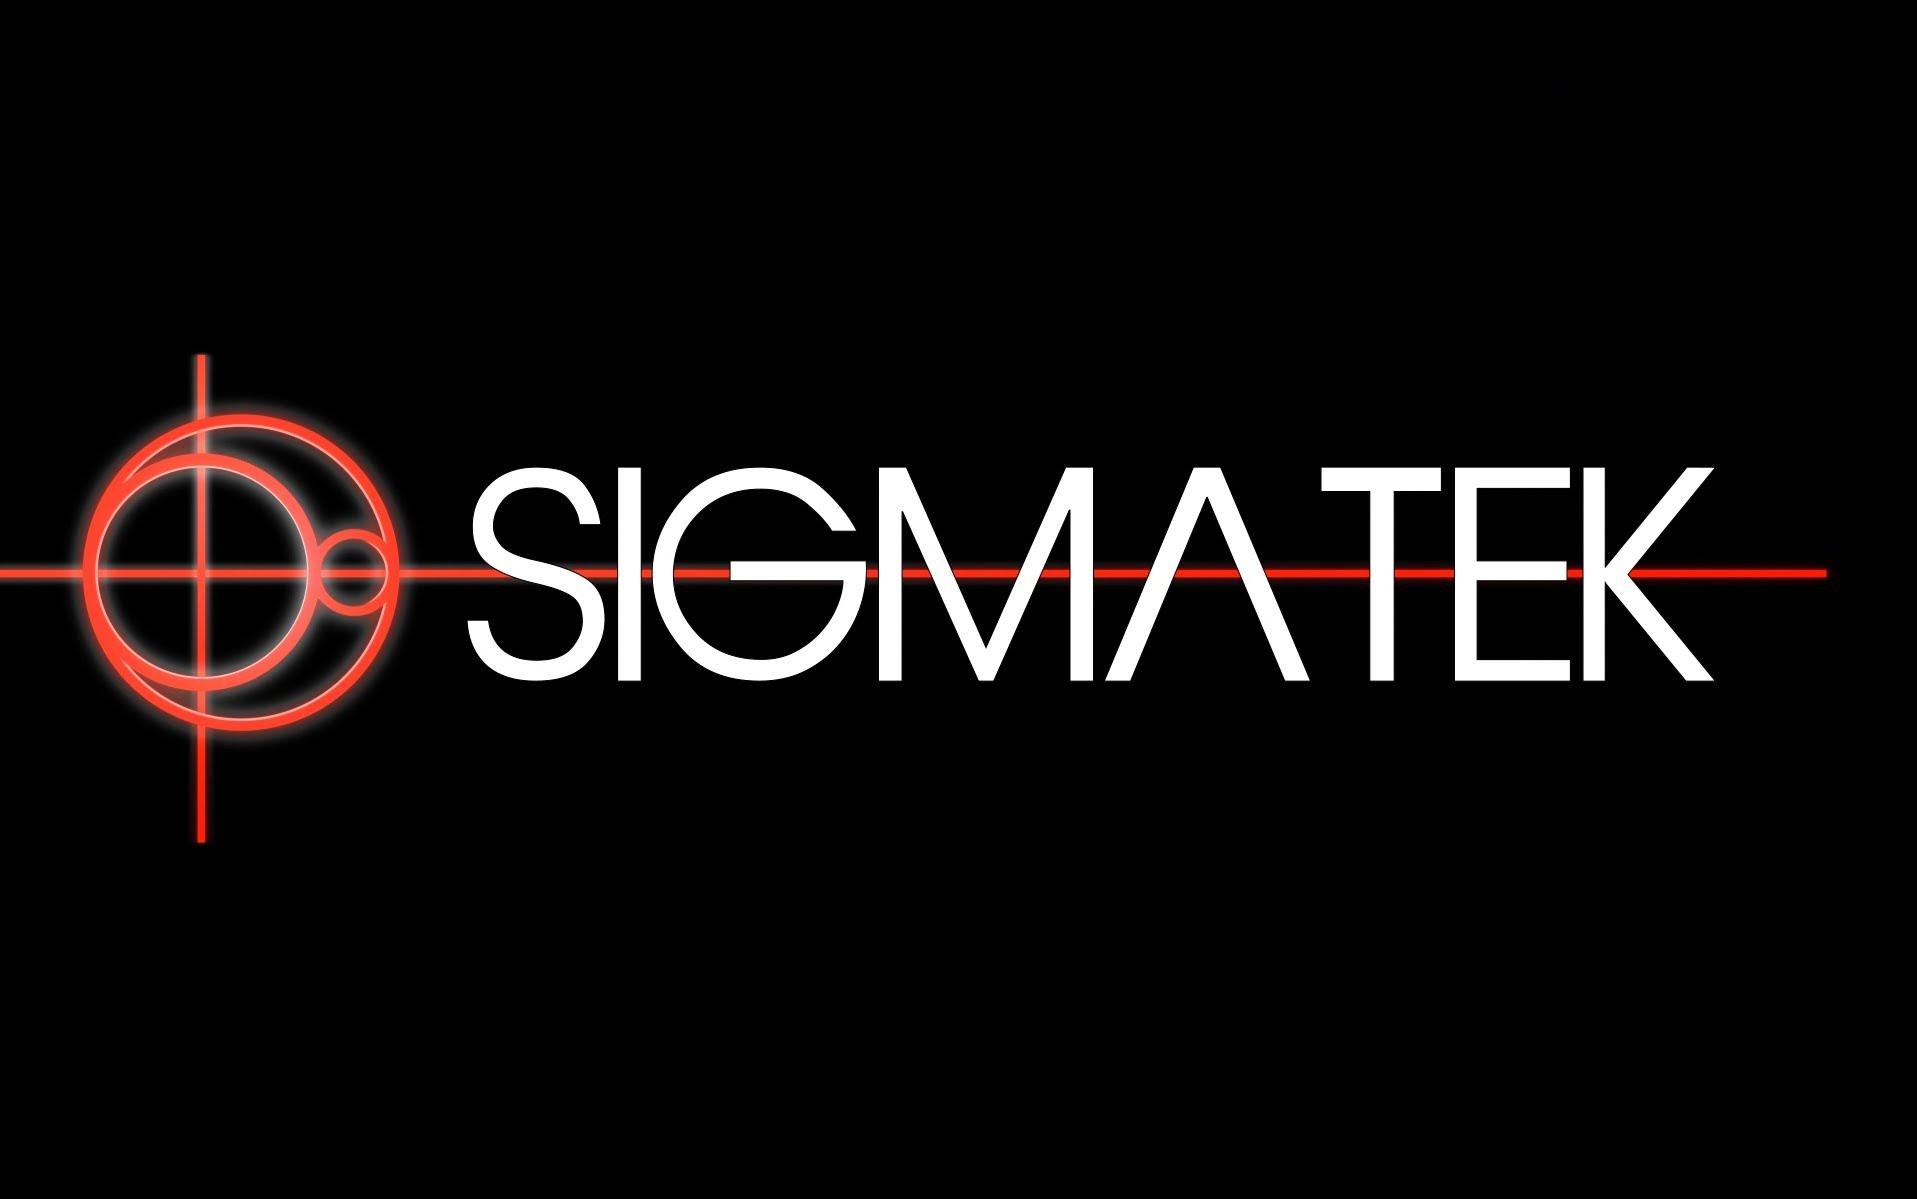 sigmatek-logo.jpg